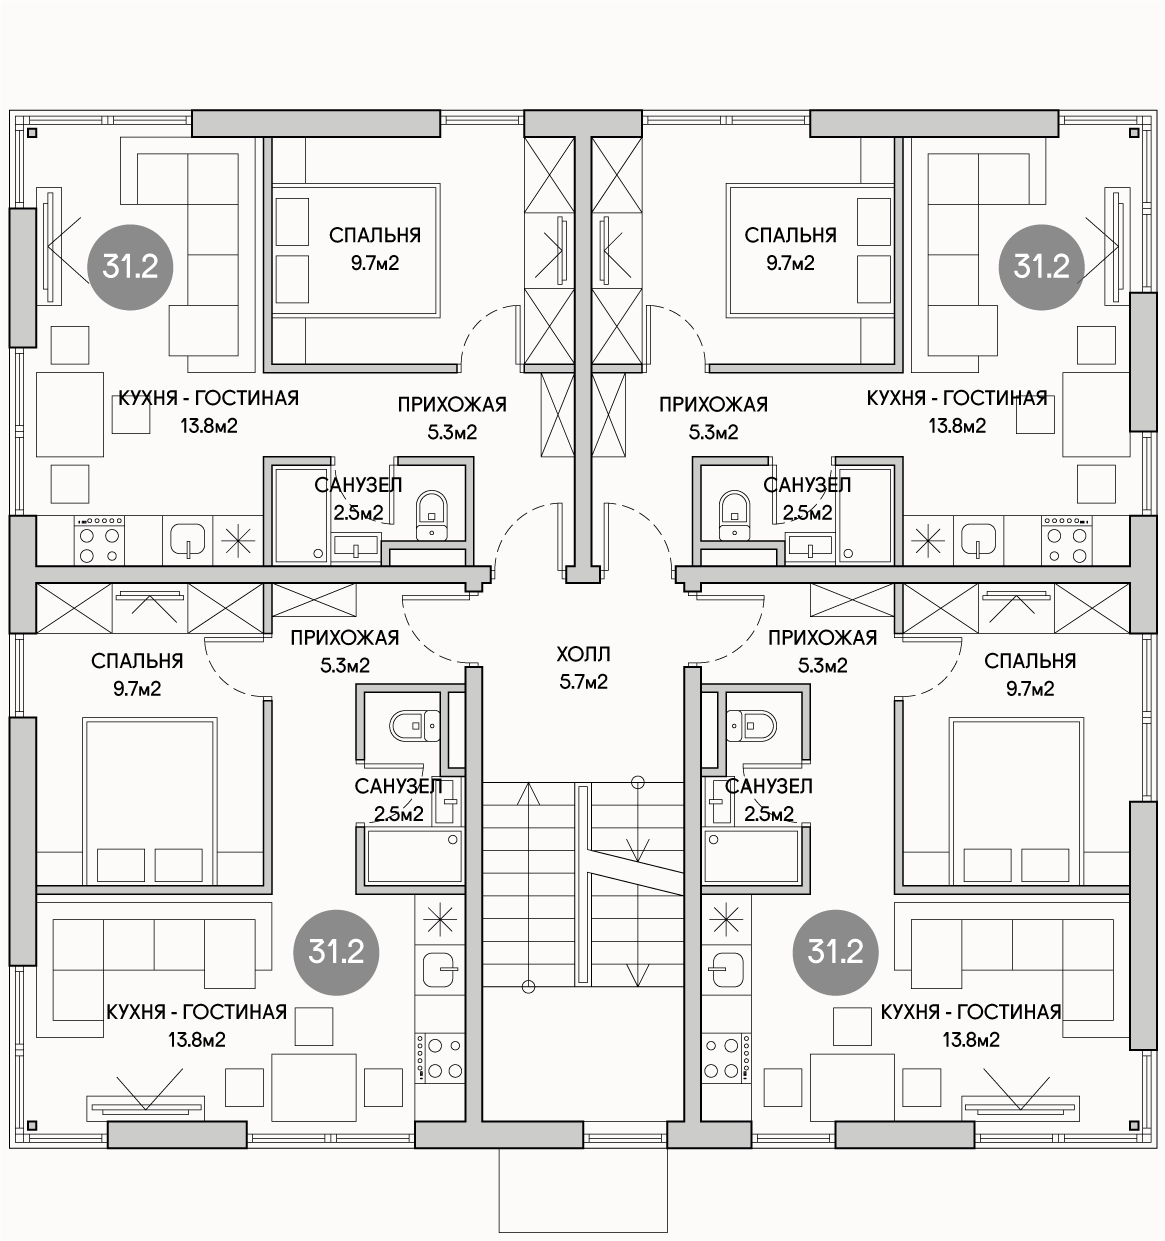 Планирока 2-го этажа в проекте Доходный дом на 16 квартир под сдачу MK-516